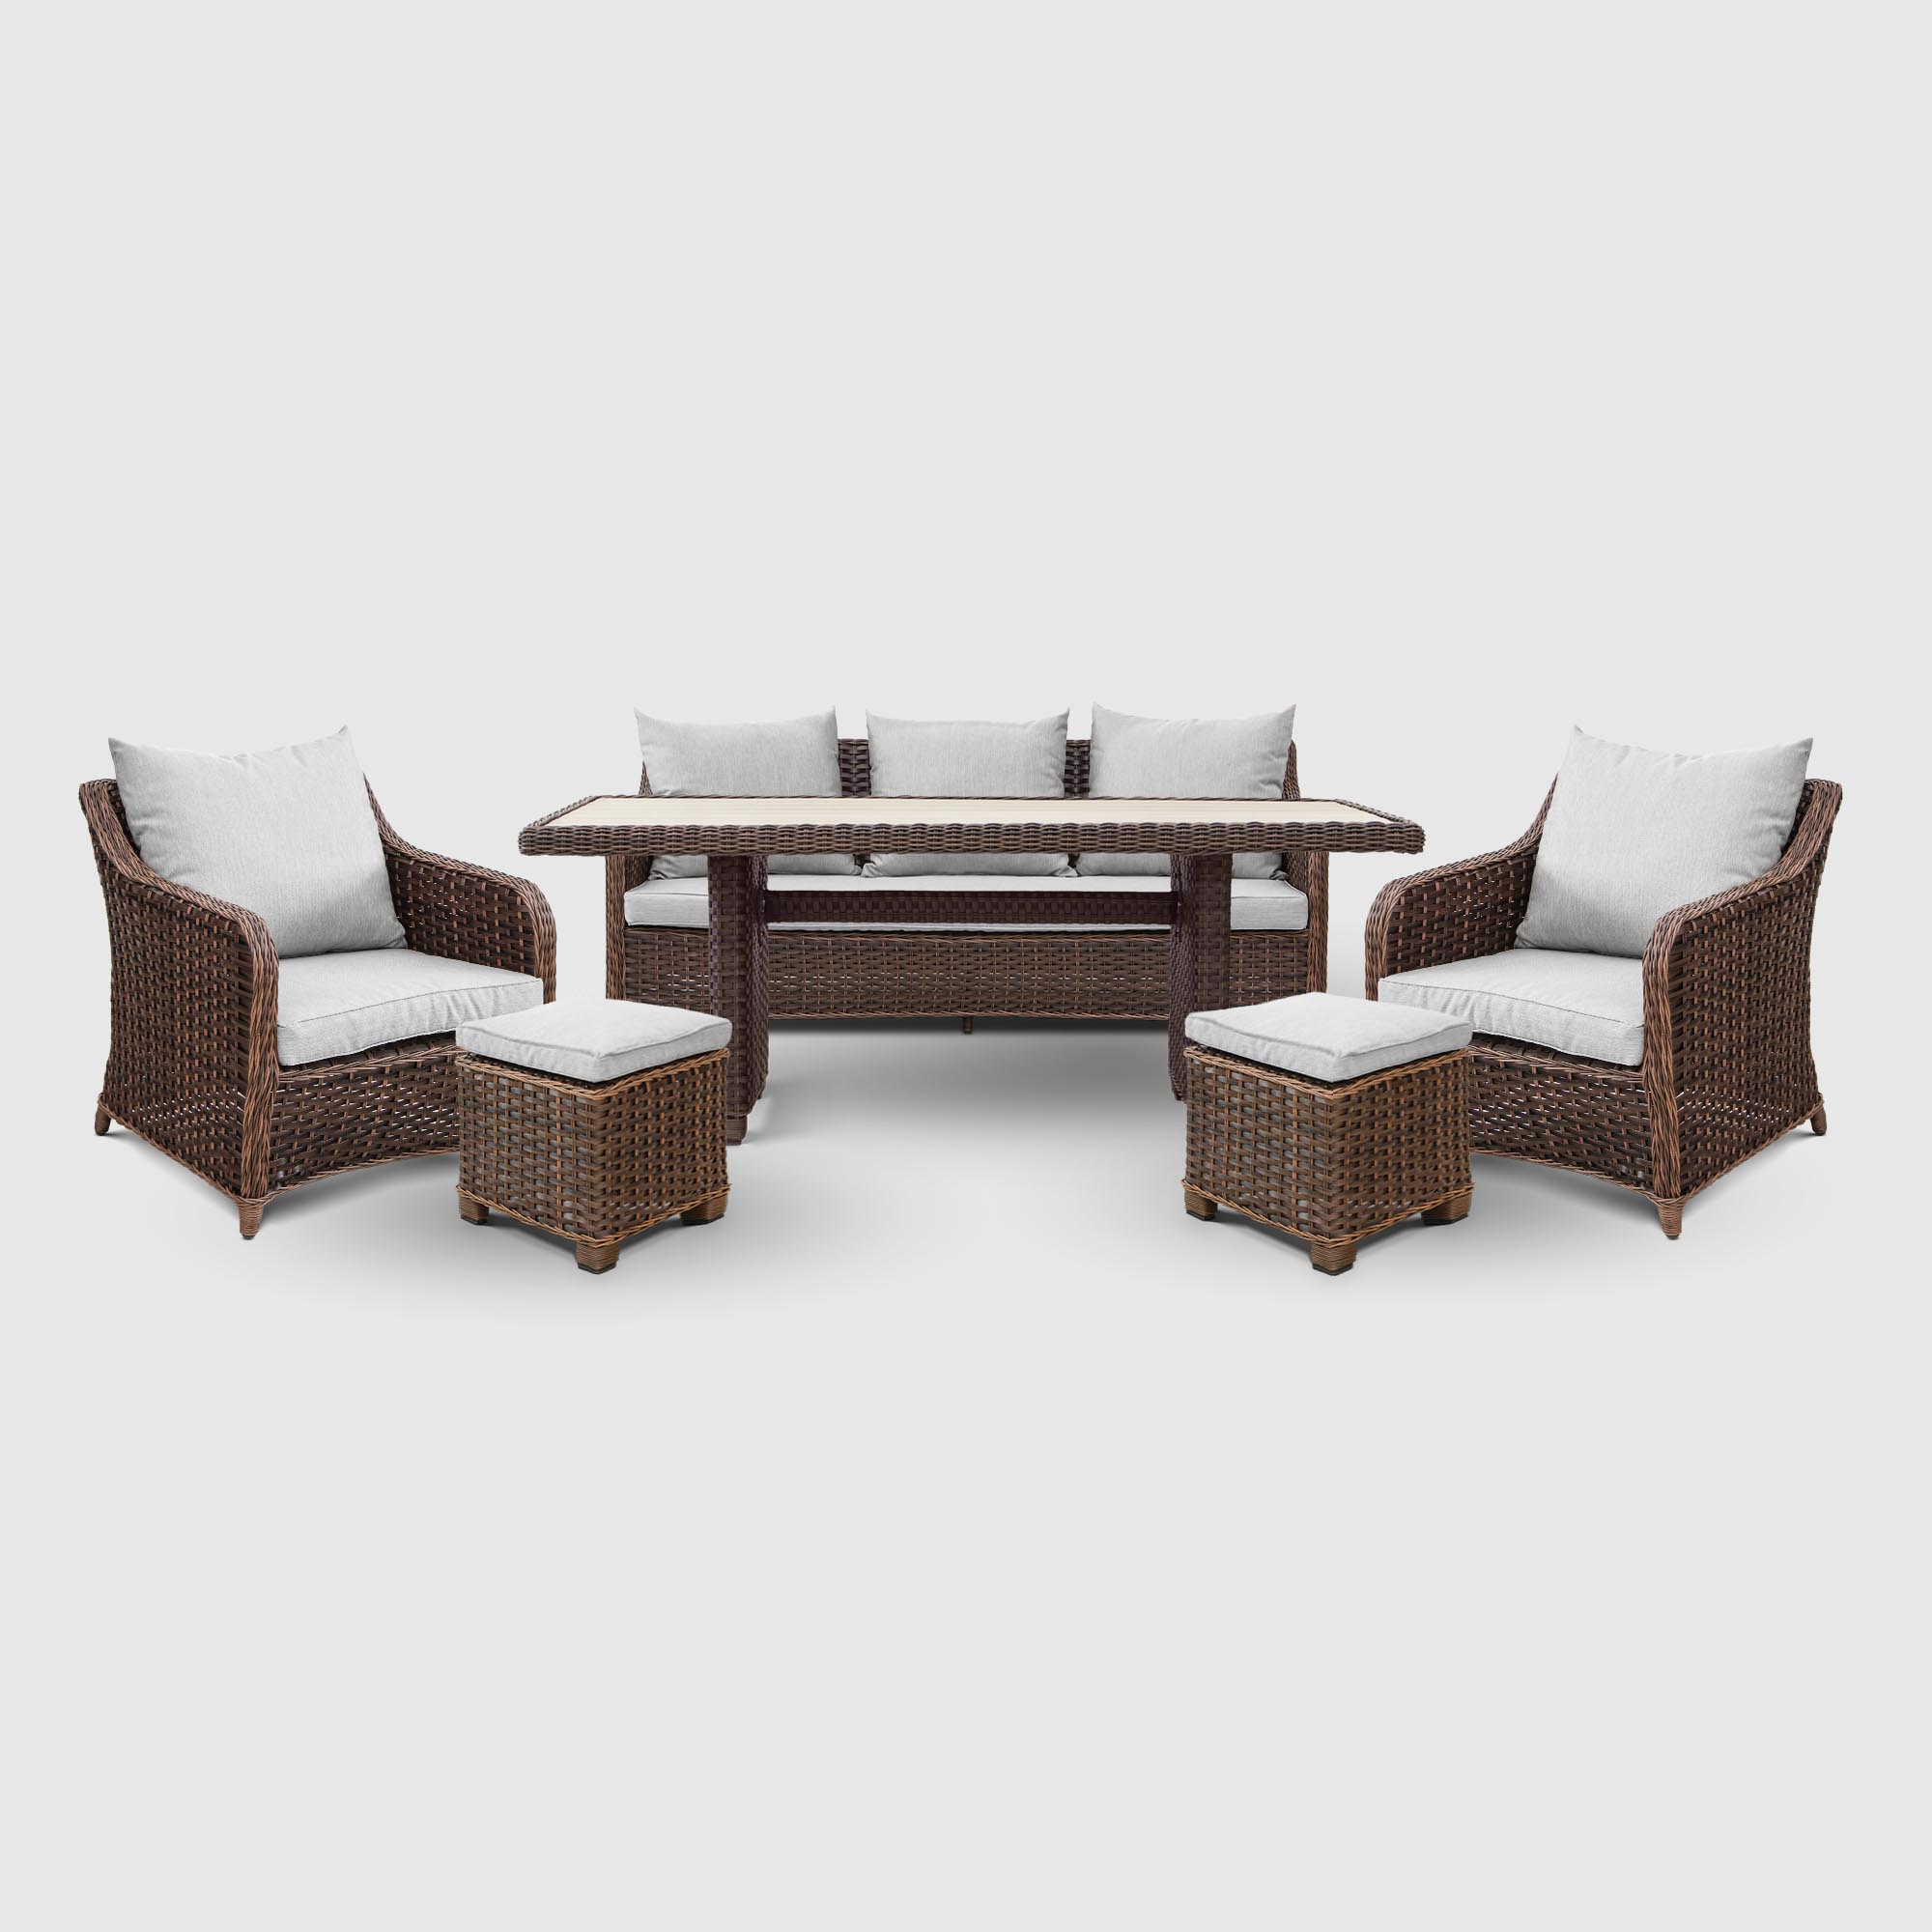 Комплект мебели Yuhang коричневый с серым 6 предметов, цвет бежевый, размер 190х82х76